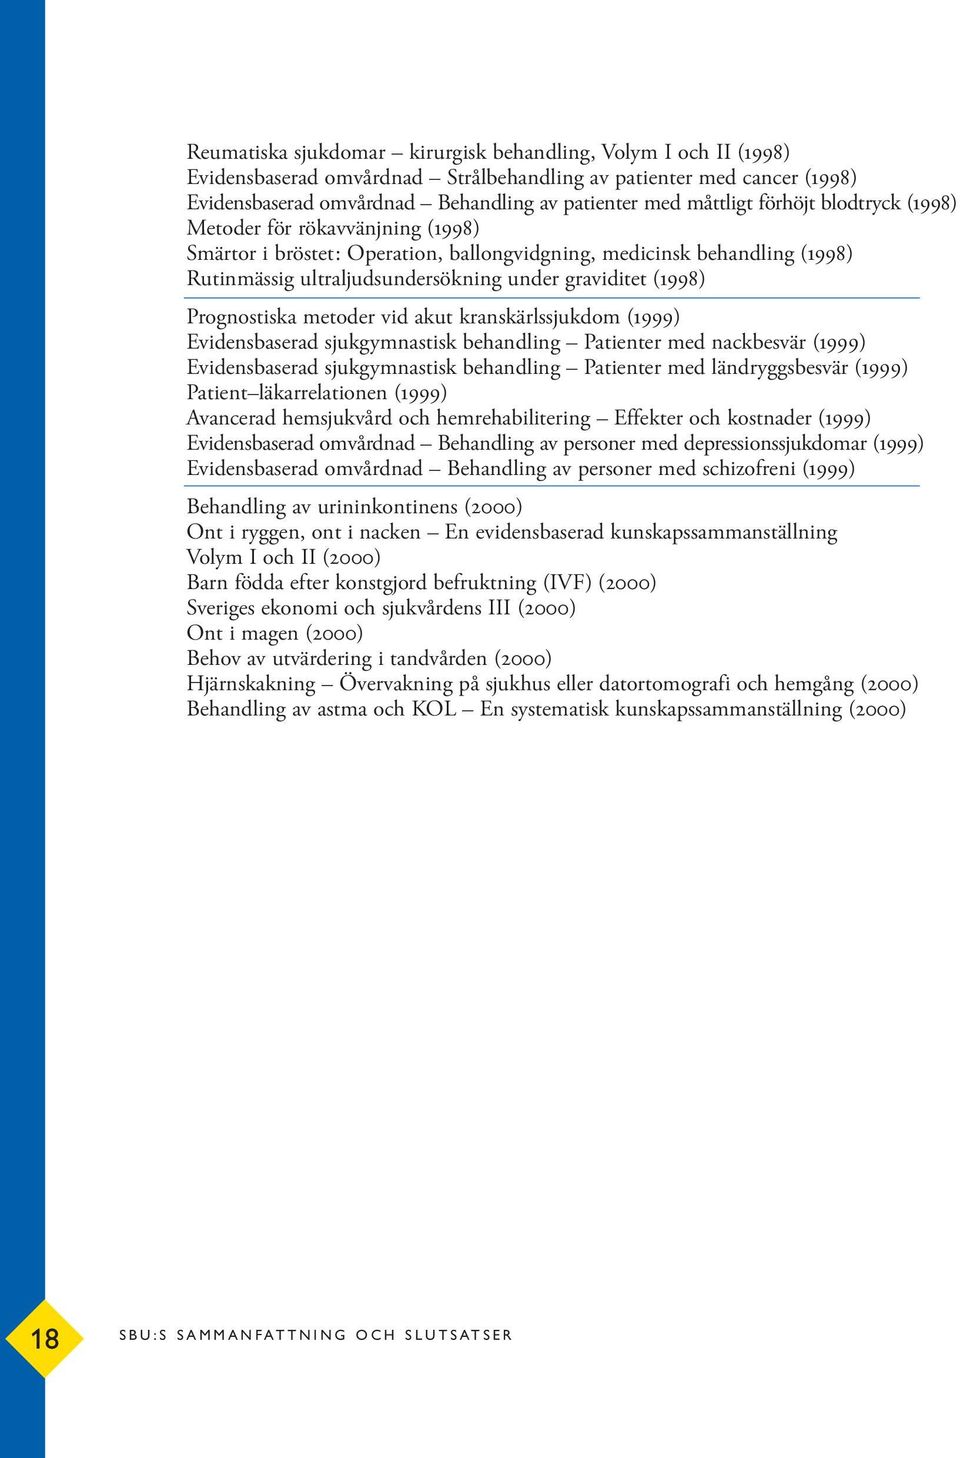 Prognostiska metoder vid akut kranskärlssjukdom (1999) Evidensbaserad sjukgymnastisk behandling Patienter med nackbesvär (1999) Evidensbaserad sjukgymnastisk behandling Patienter med ländryggsbesvär